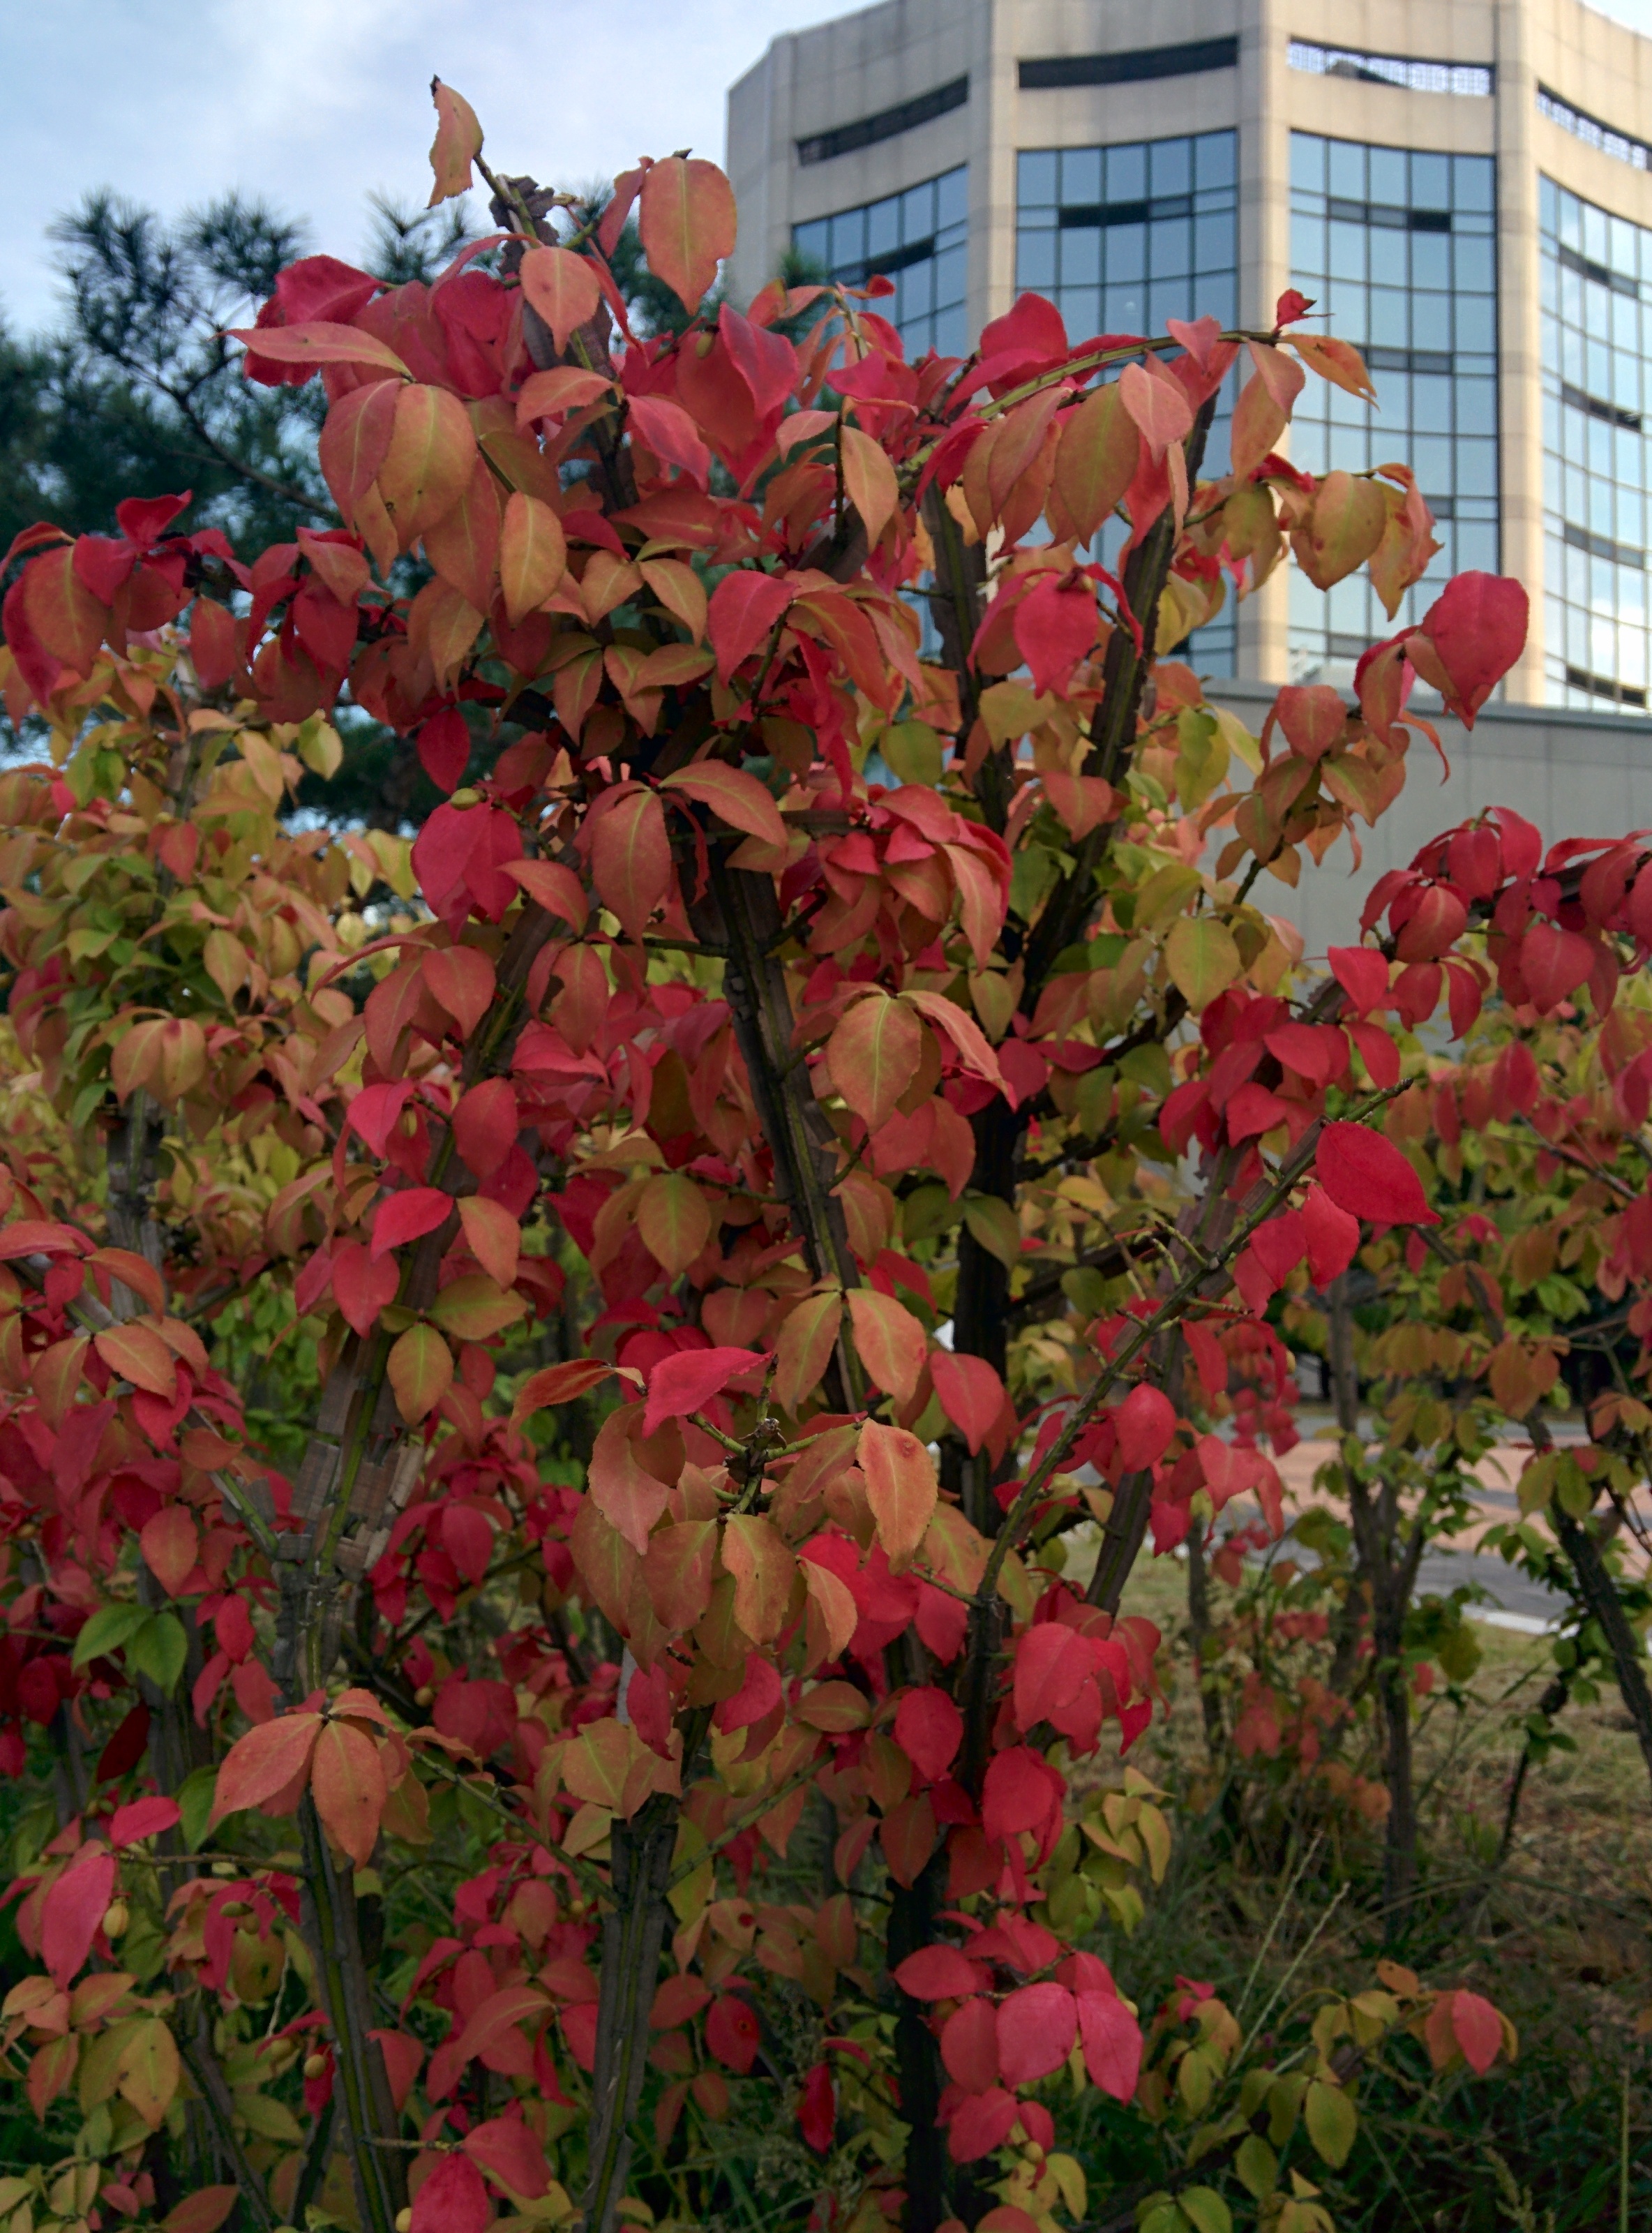 IMG_20150918_172955.jpg 단풍처럼 붉게 물든 화살나무, 작은 열매를 맺다.